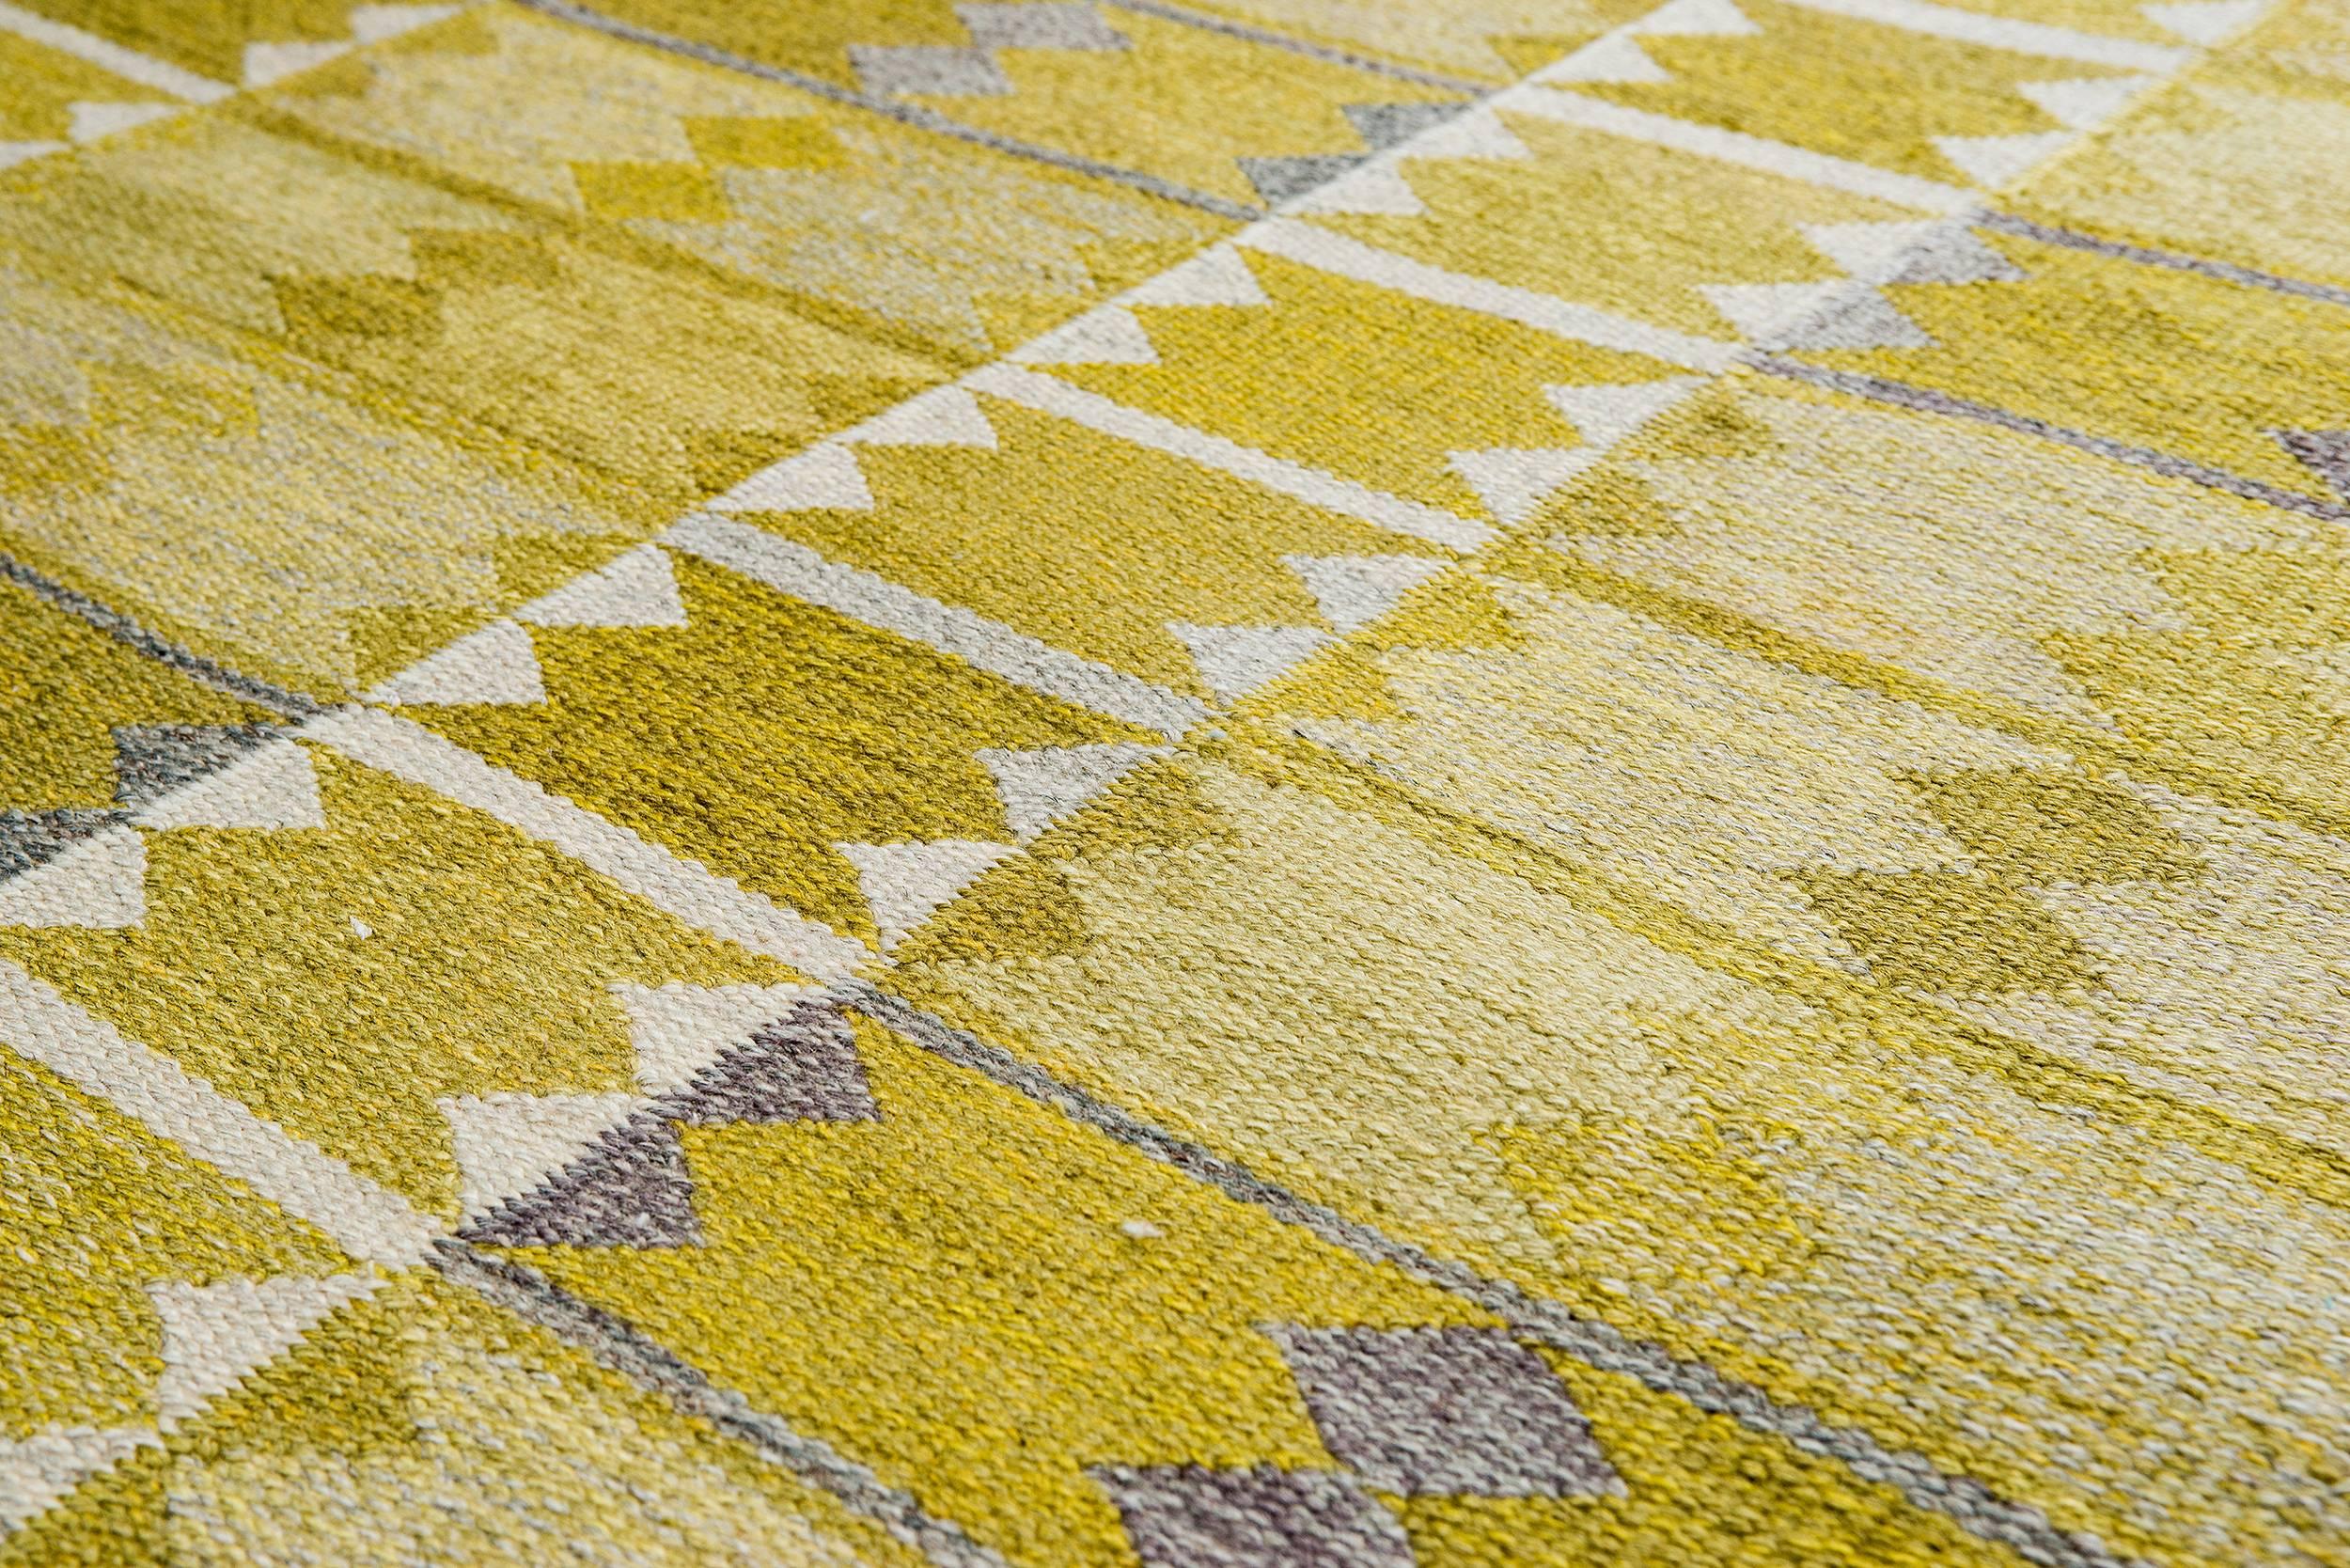 Vintage Ingrid Dessau "Liljorna Gul" flat-weave Swedish carpet.